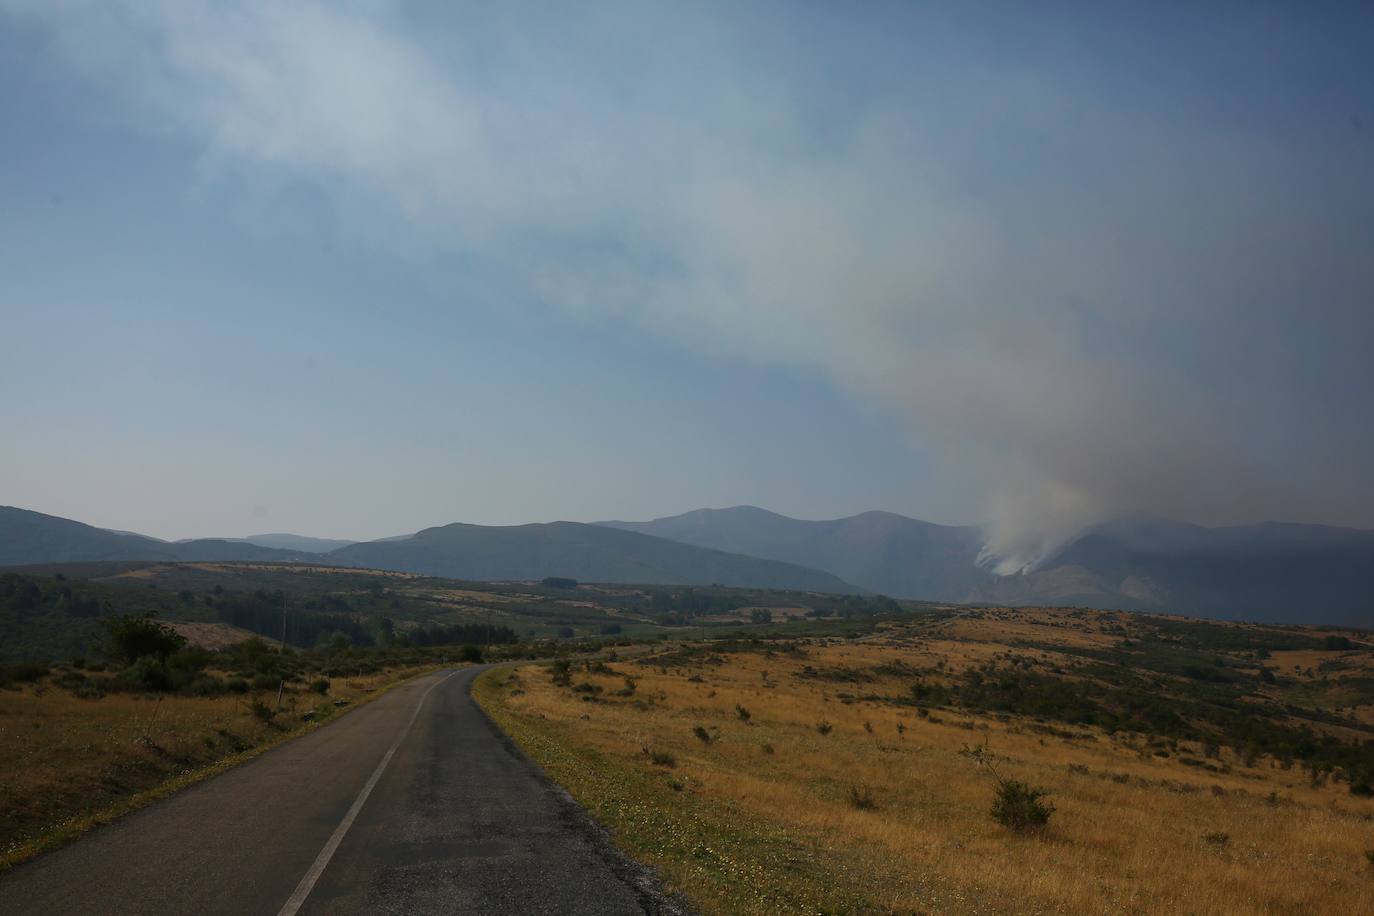 Incendio en Montes de Valdueza